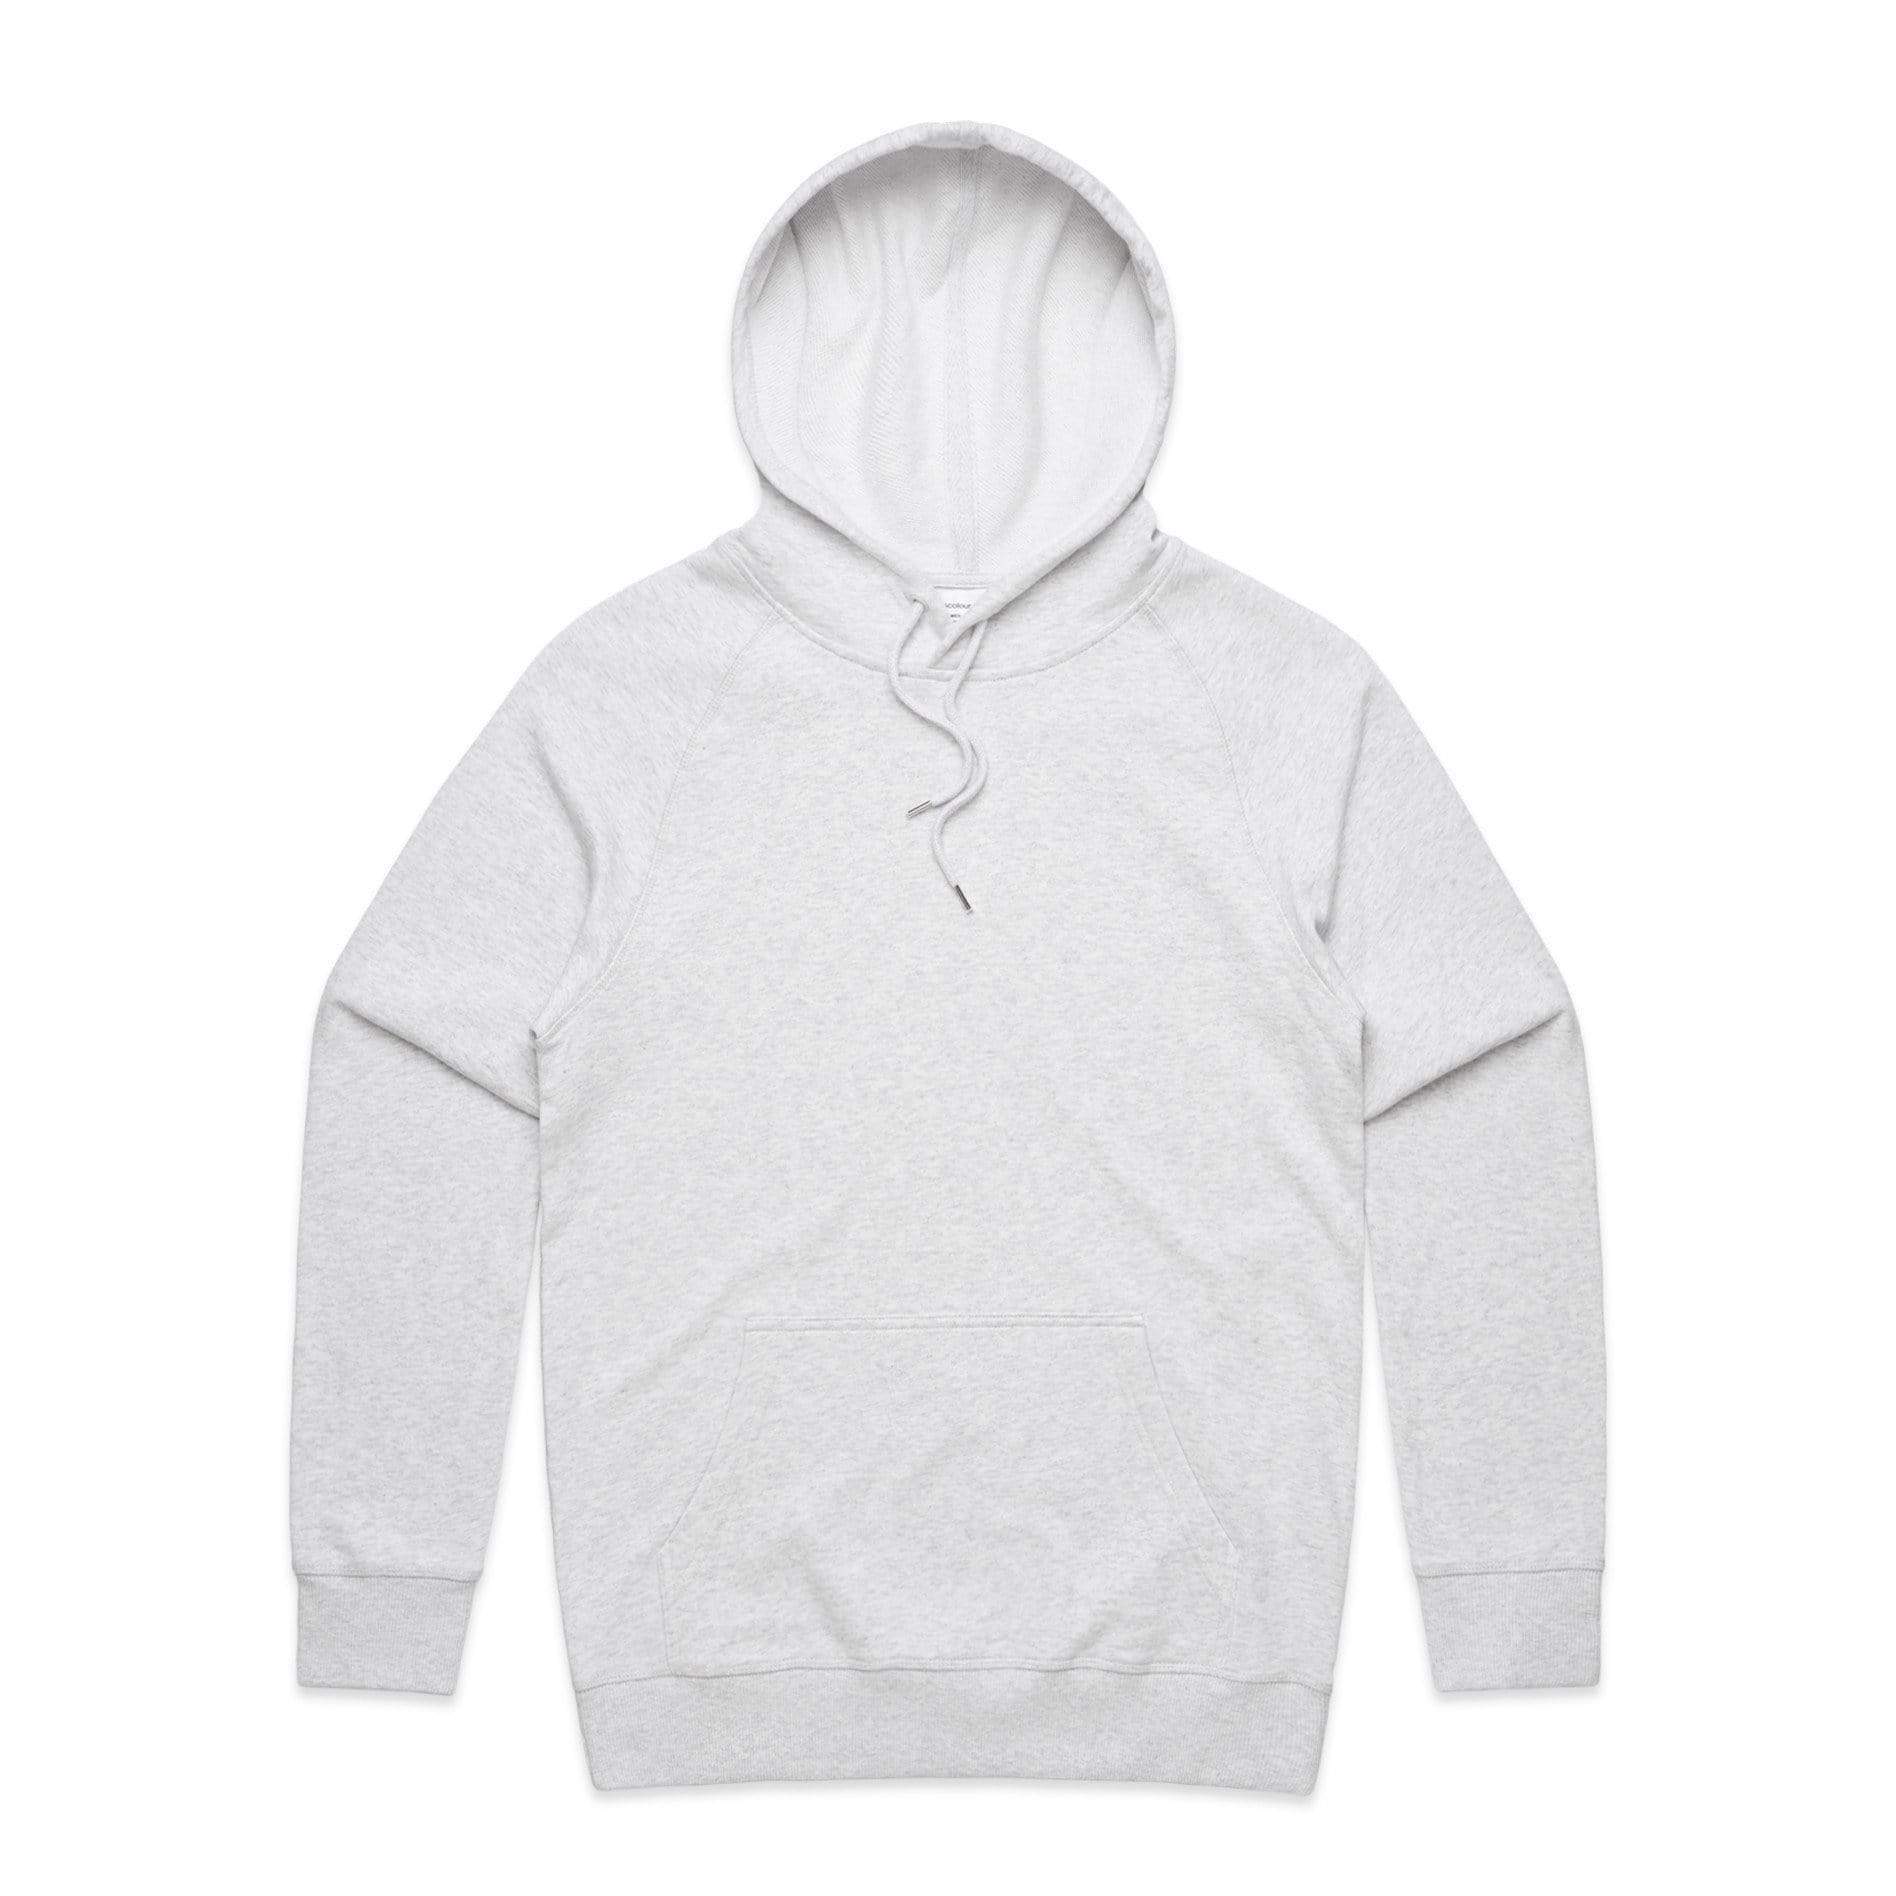 As Colour Casual Wear WHITE MARLE / XSM As Colour Men's premium hoodie 5120